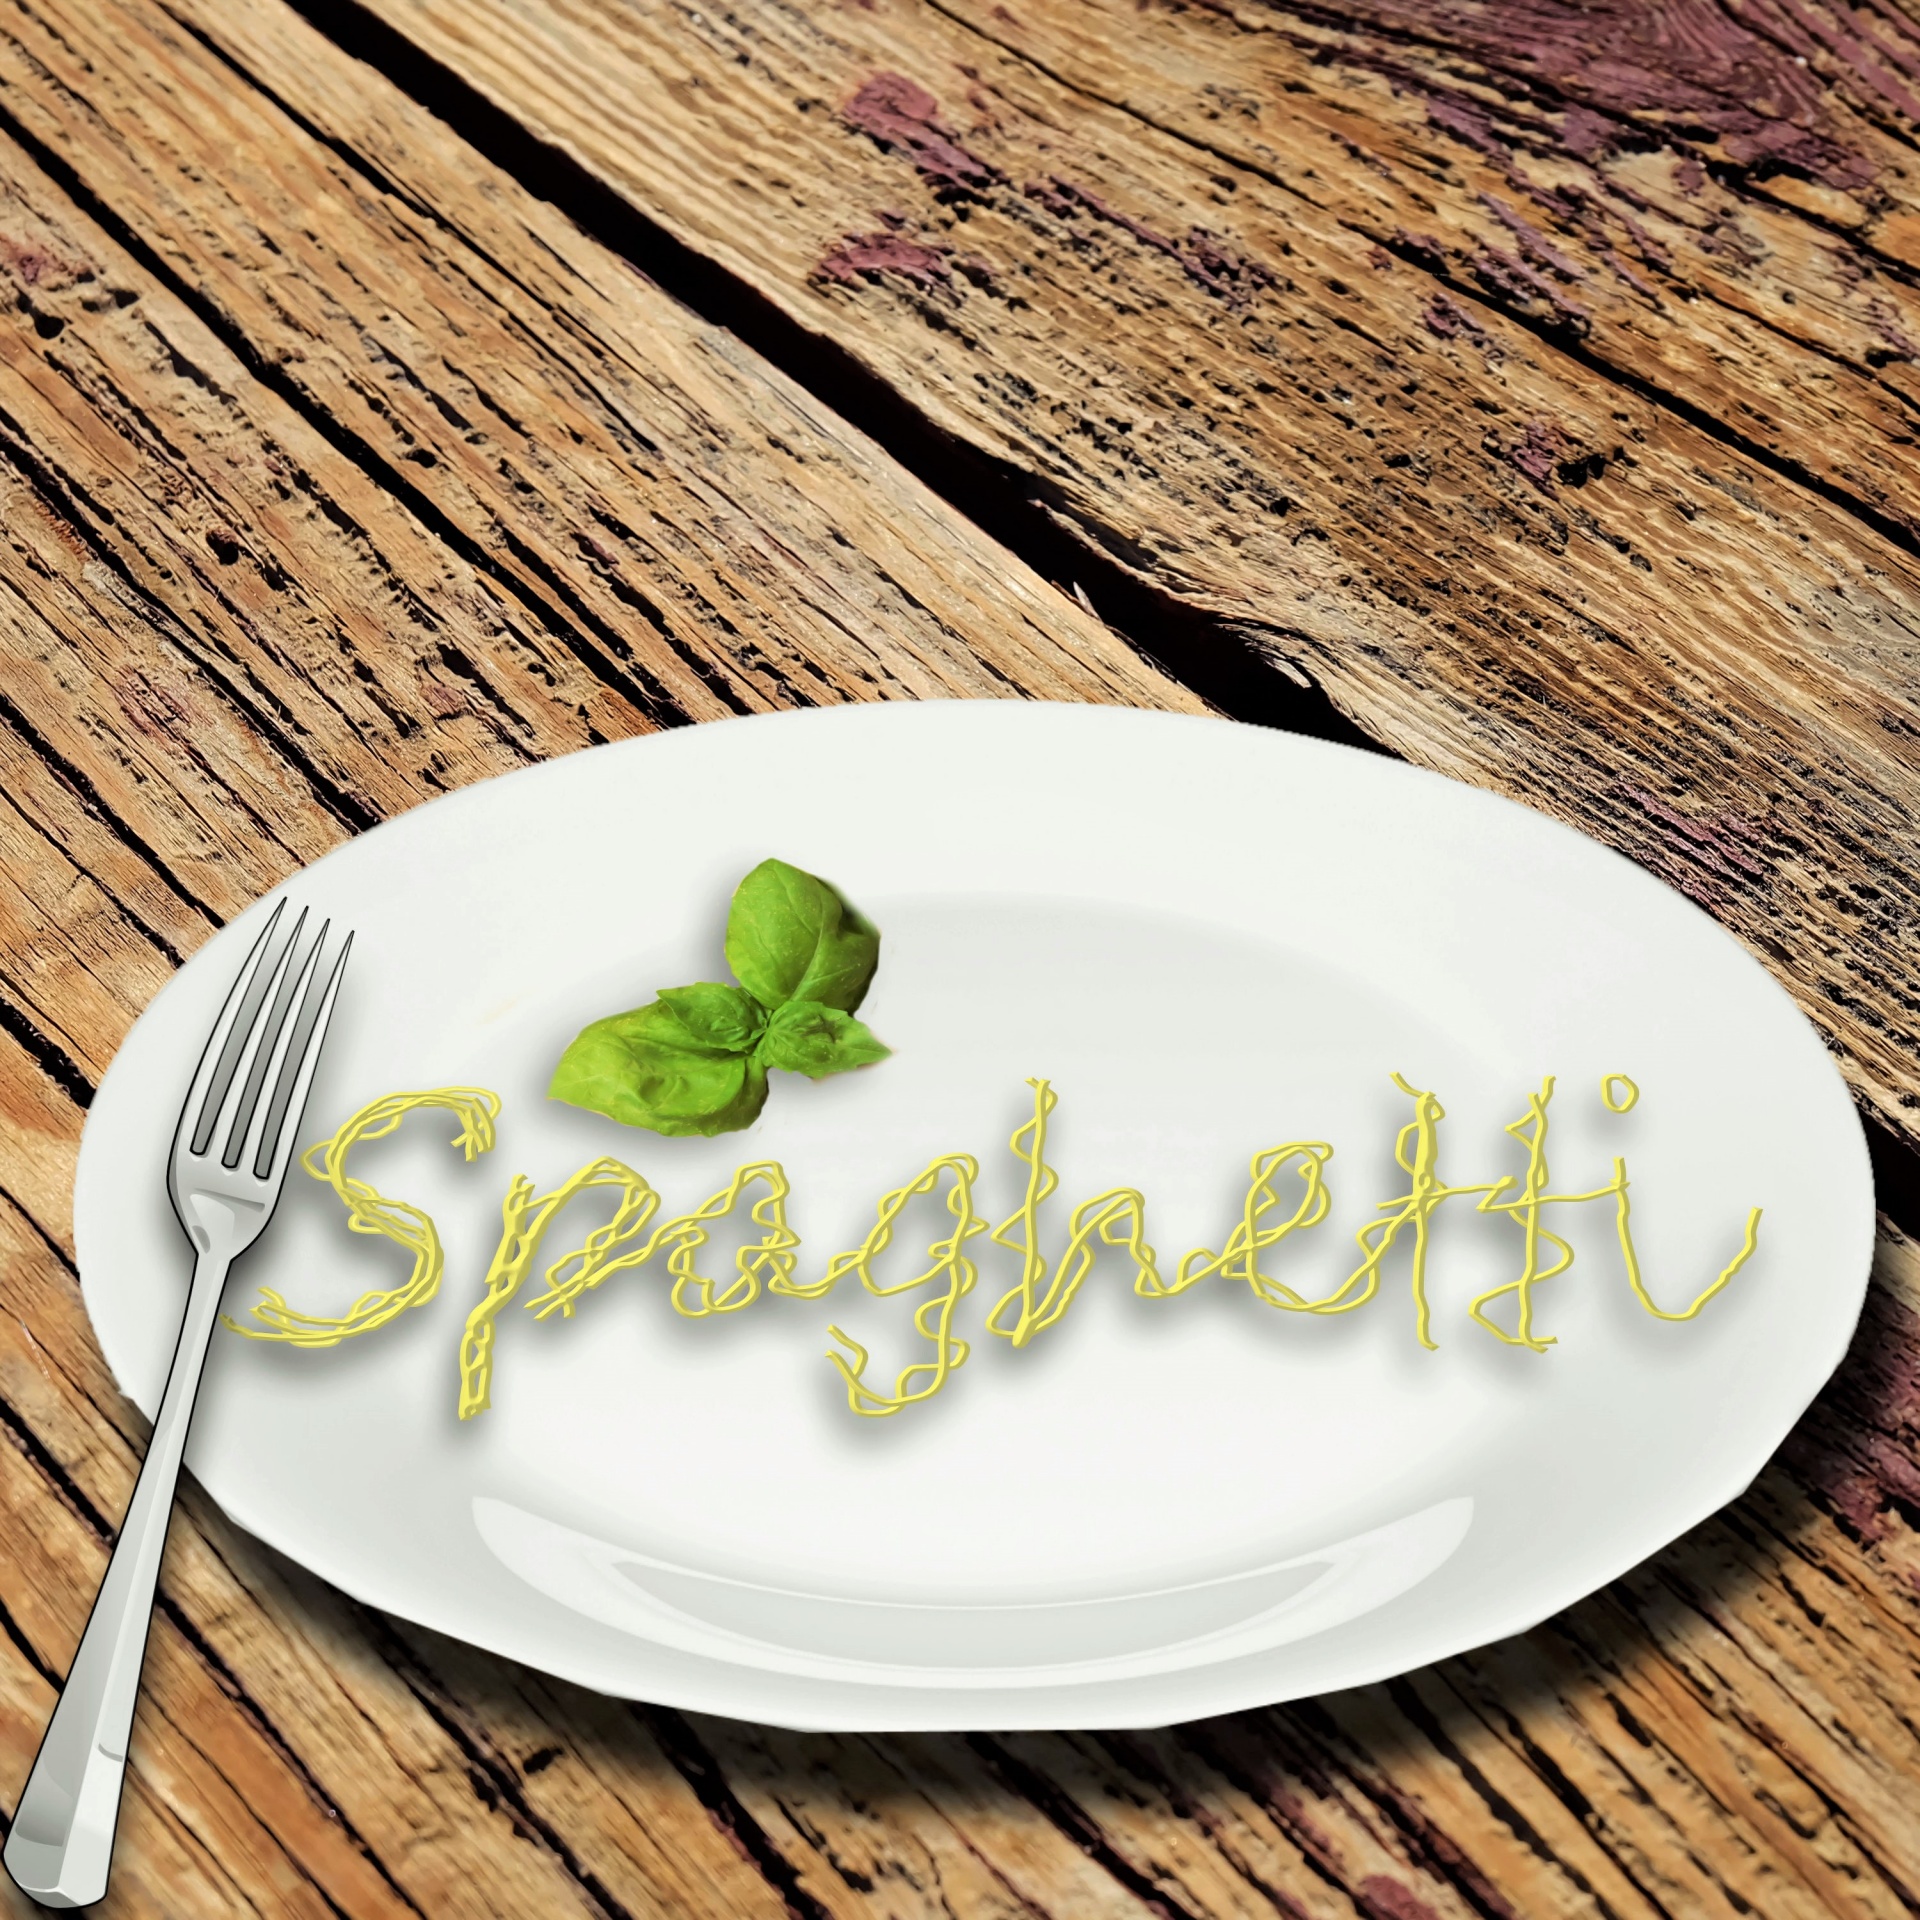 Tasty Spaghetti Salad